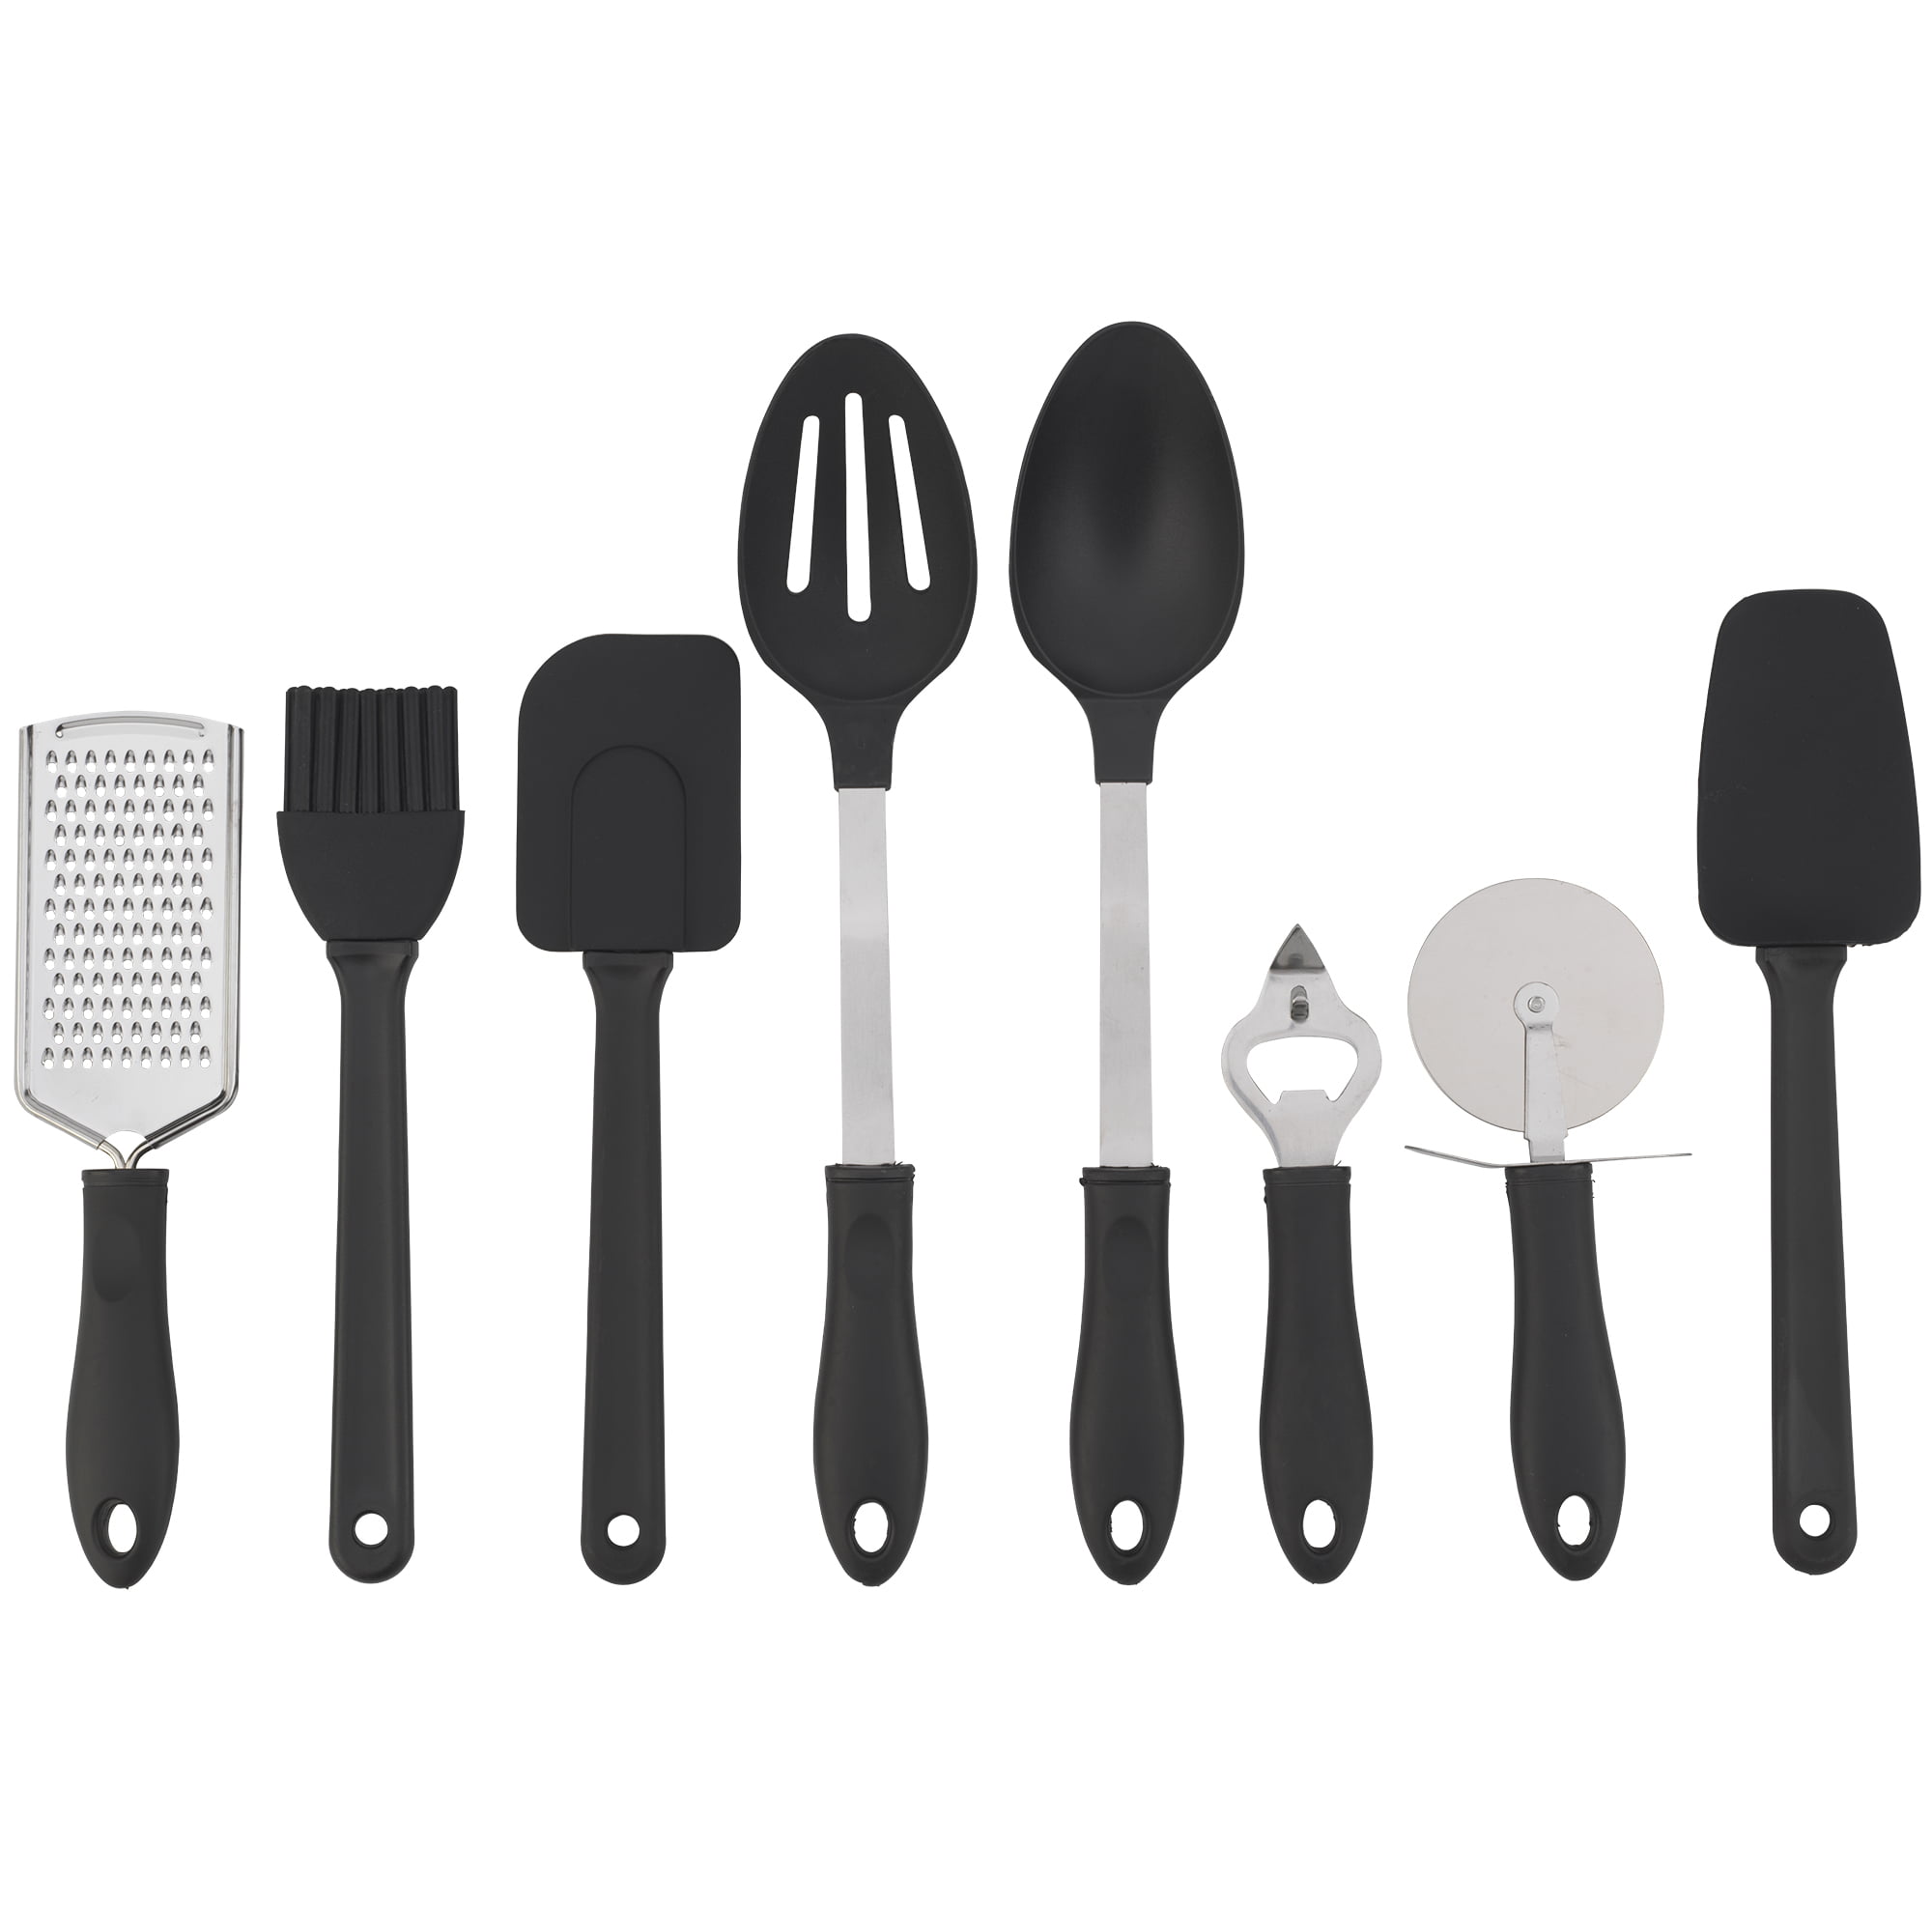 Mainstays Complete Kitchen Gadget Set in Storage Tray - Black & White - 1 Each